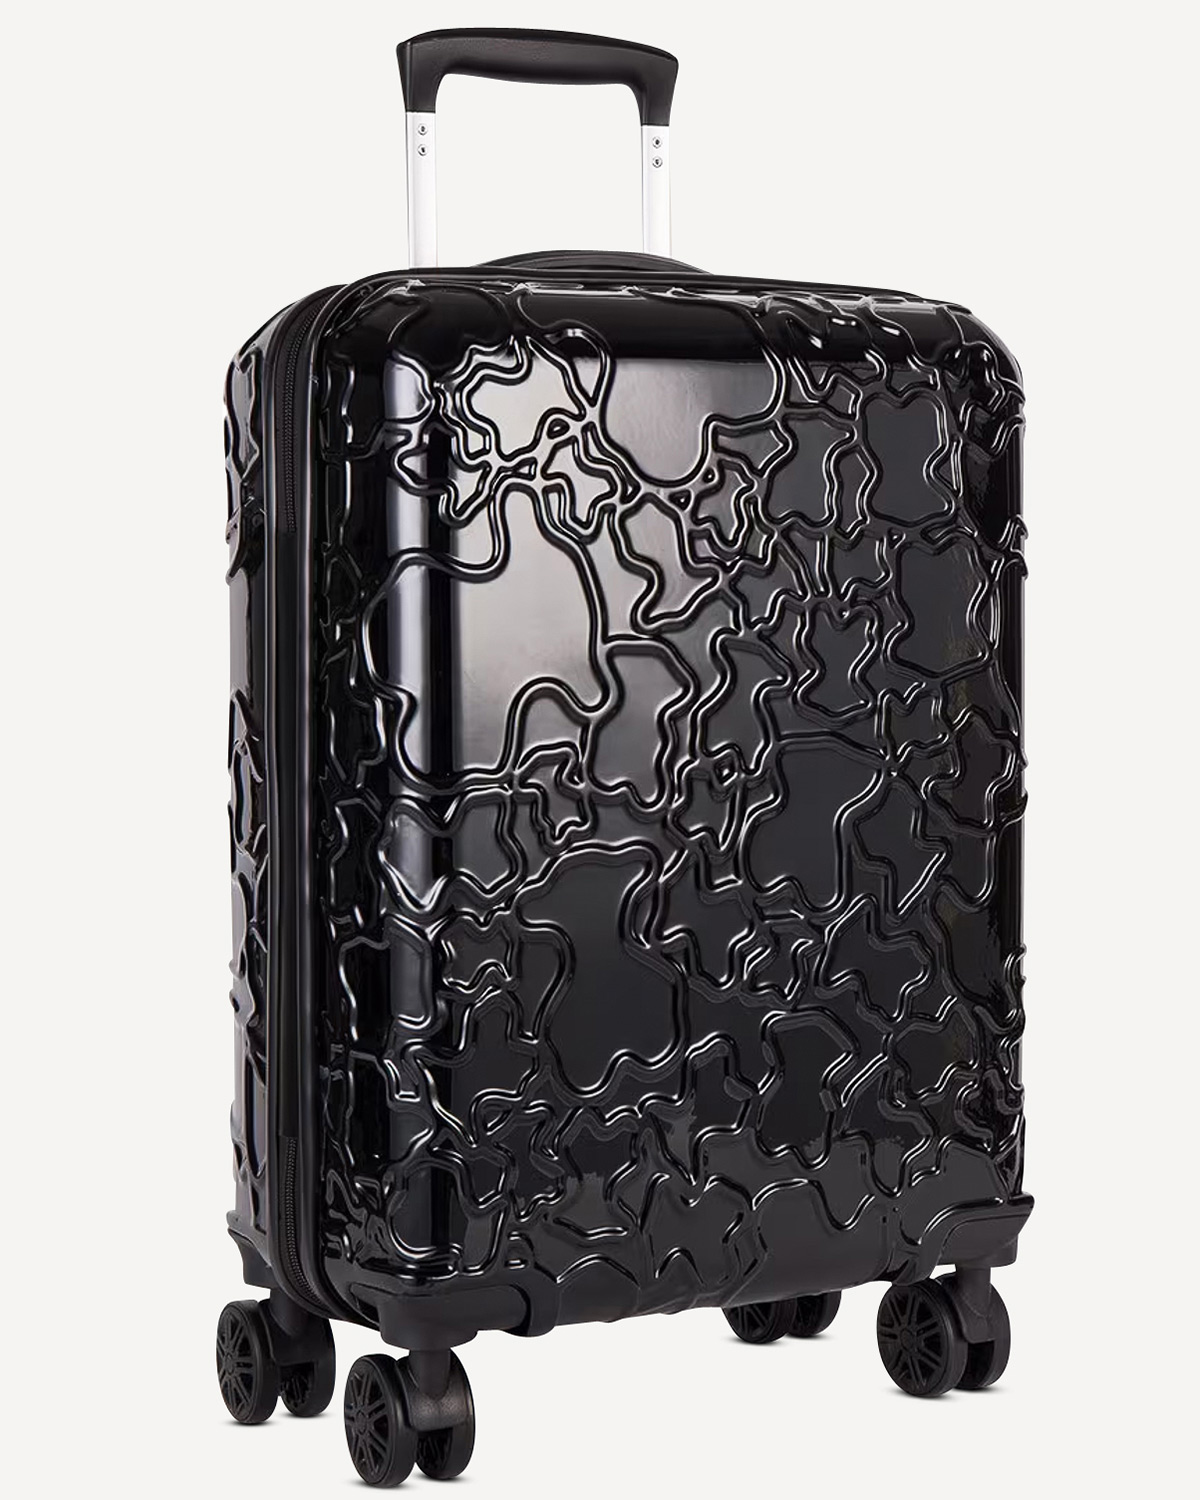 Γυναίκα - Travel Luggage - Tous Μαύρο